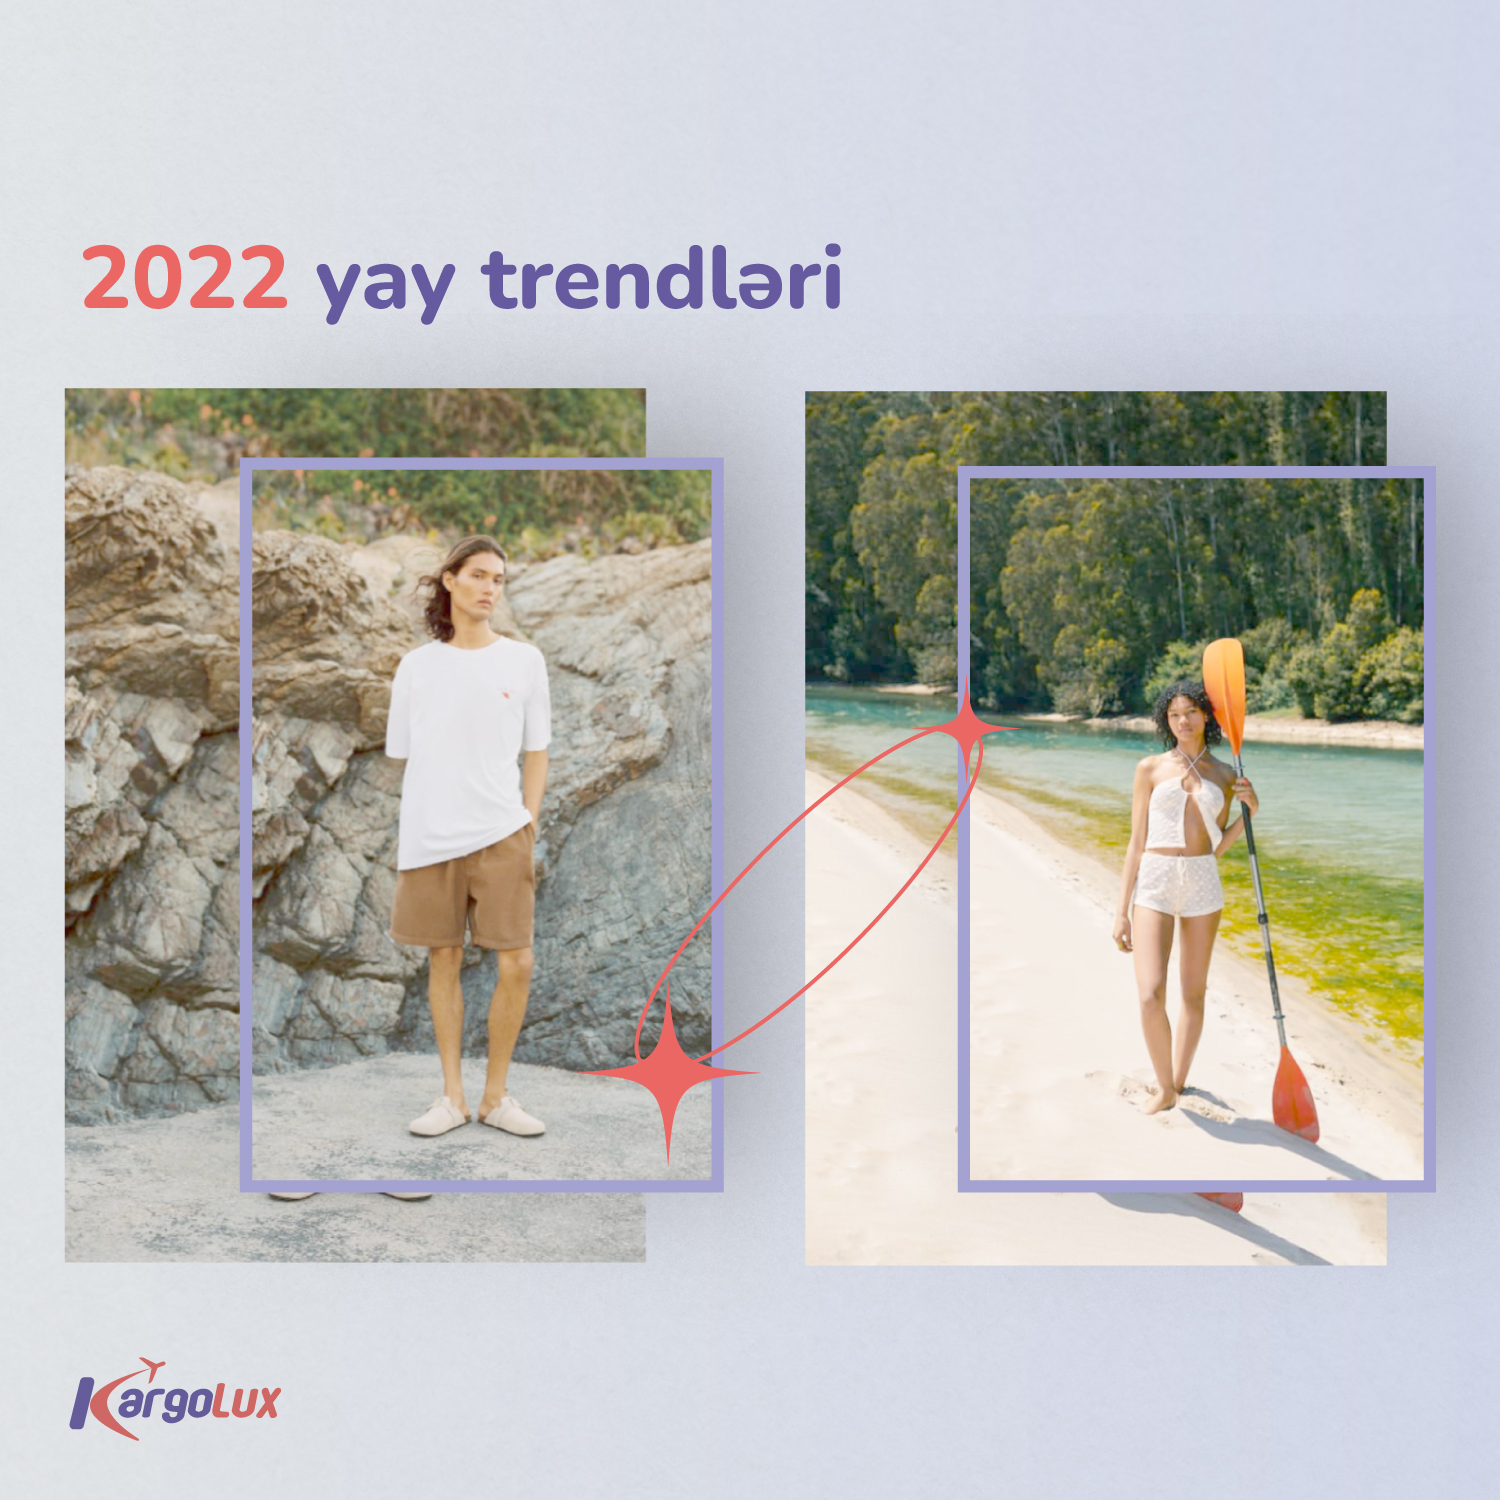 2022 Yay trendləri